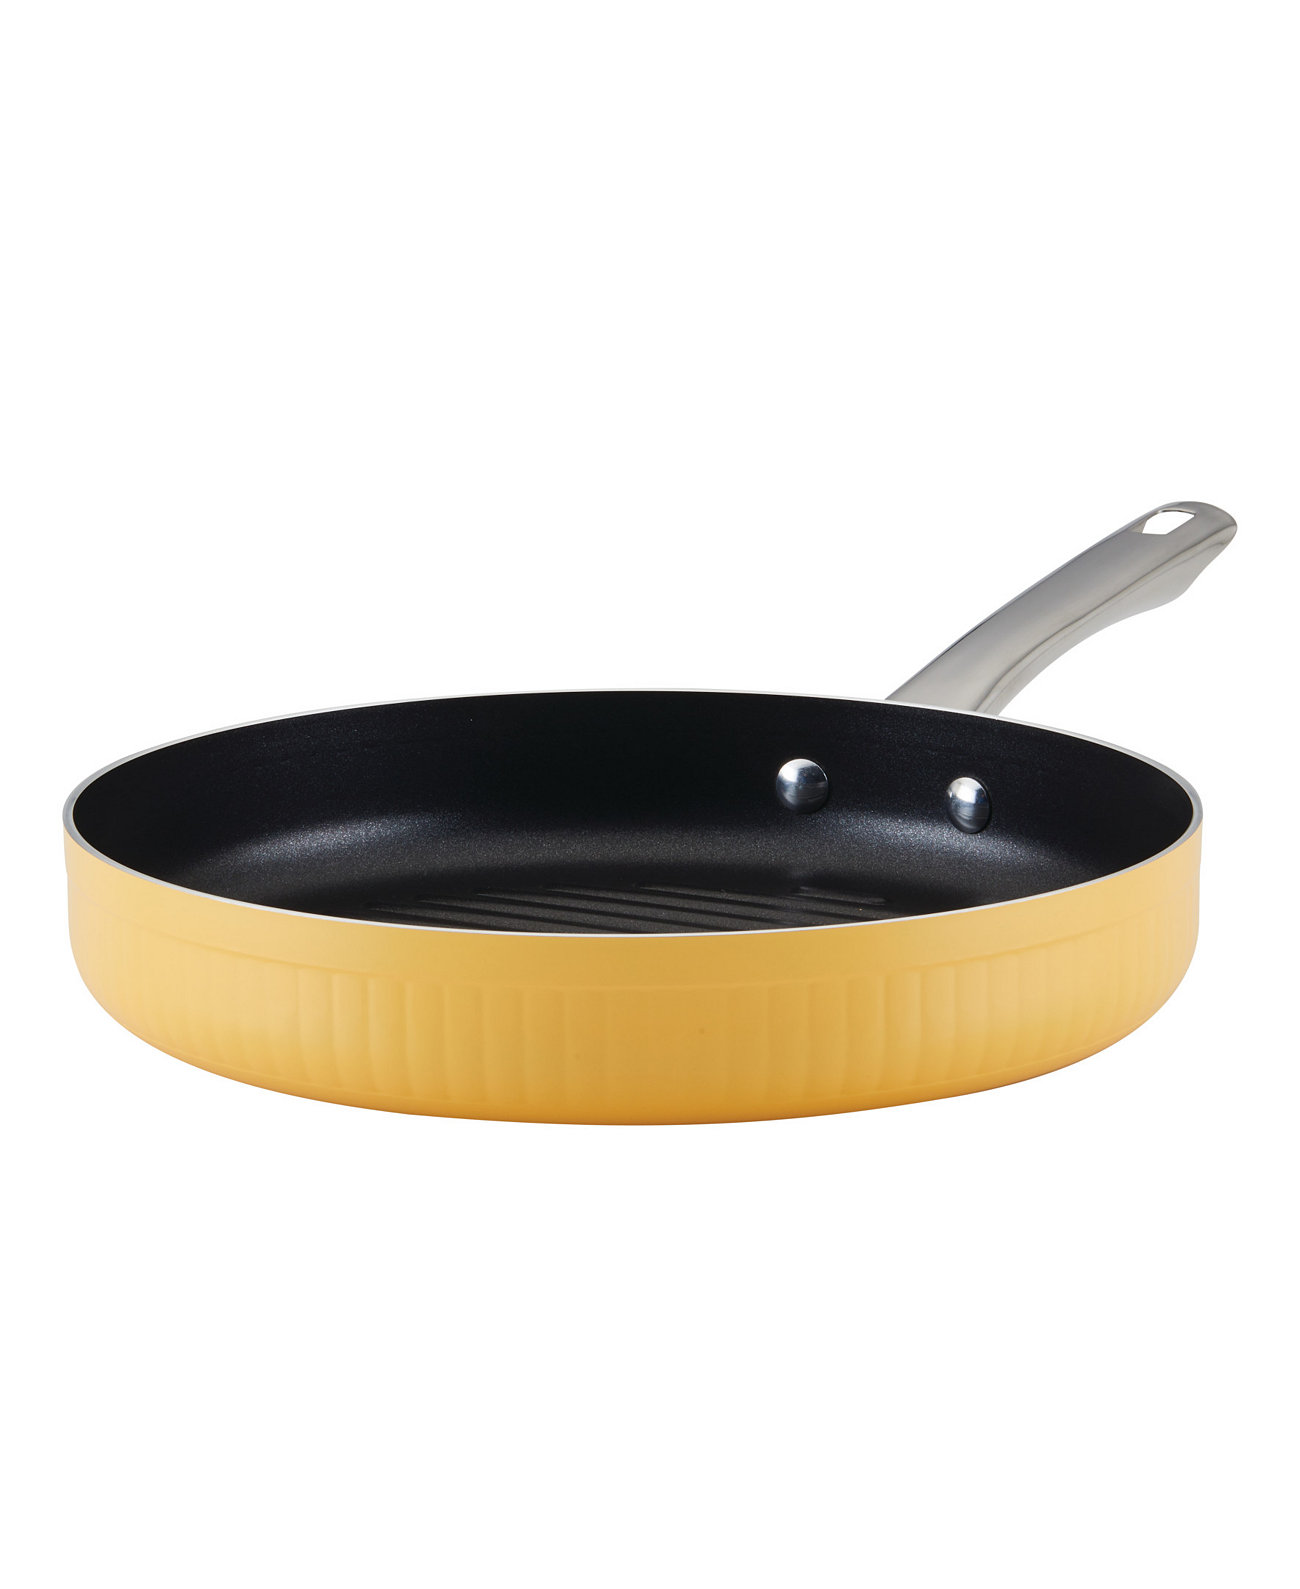 Стильная алюминиевая антипригарная посуда диаметром 11,25 дюйма, глубокая круглая сковорода для гриля Farberware